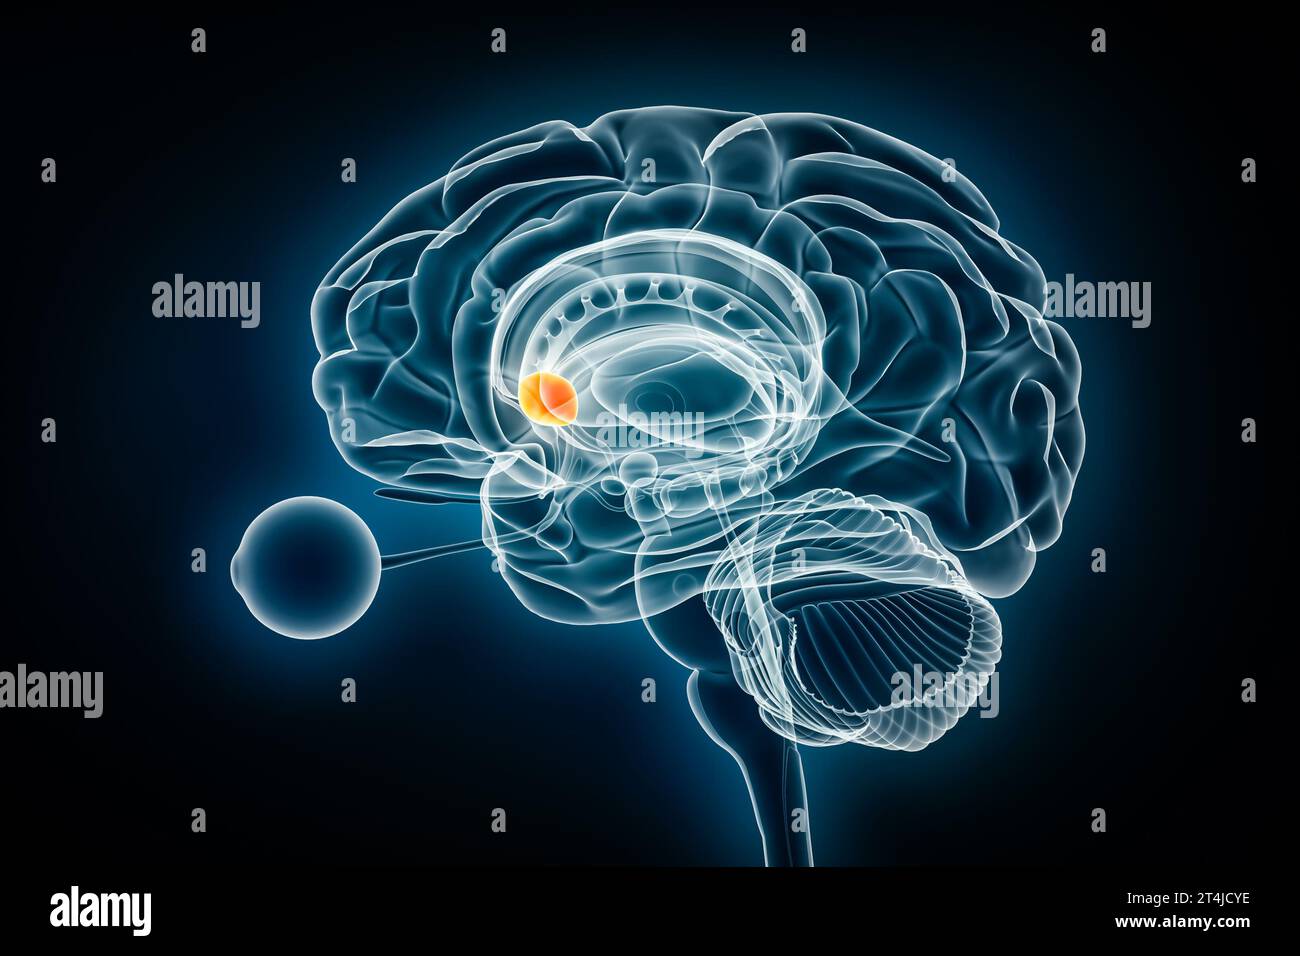 Nucleus Accumbens laterale Röntgenansicht 3D-Rendering-Illustration. Anatomie des menschlichen Gehirns und der Basalganglien, Medizin, Gesundheitswesen, Biologie, Wissenschaft, Neurosci Stockfoto